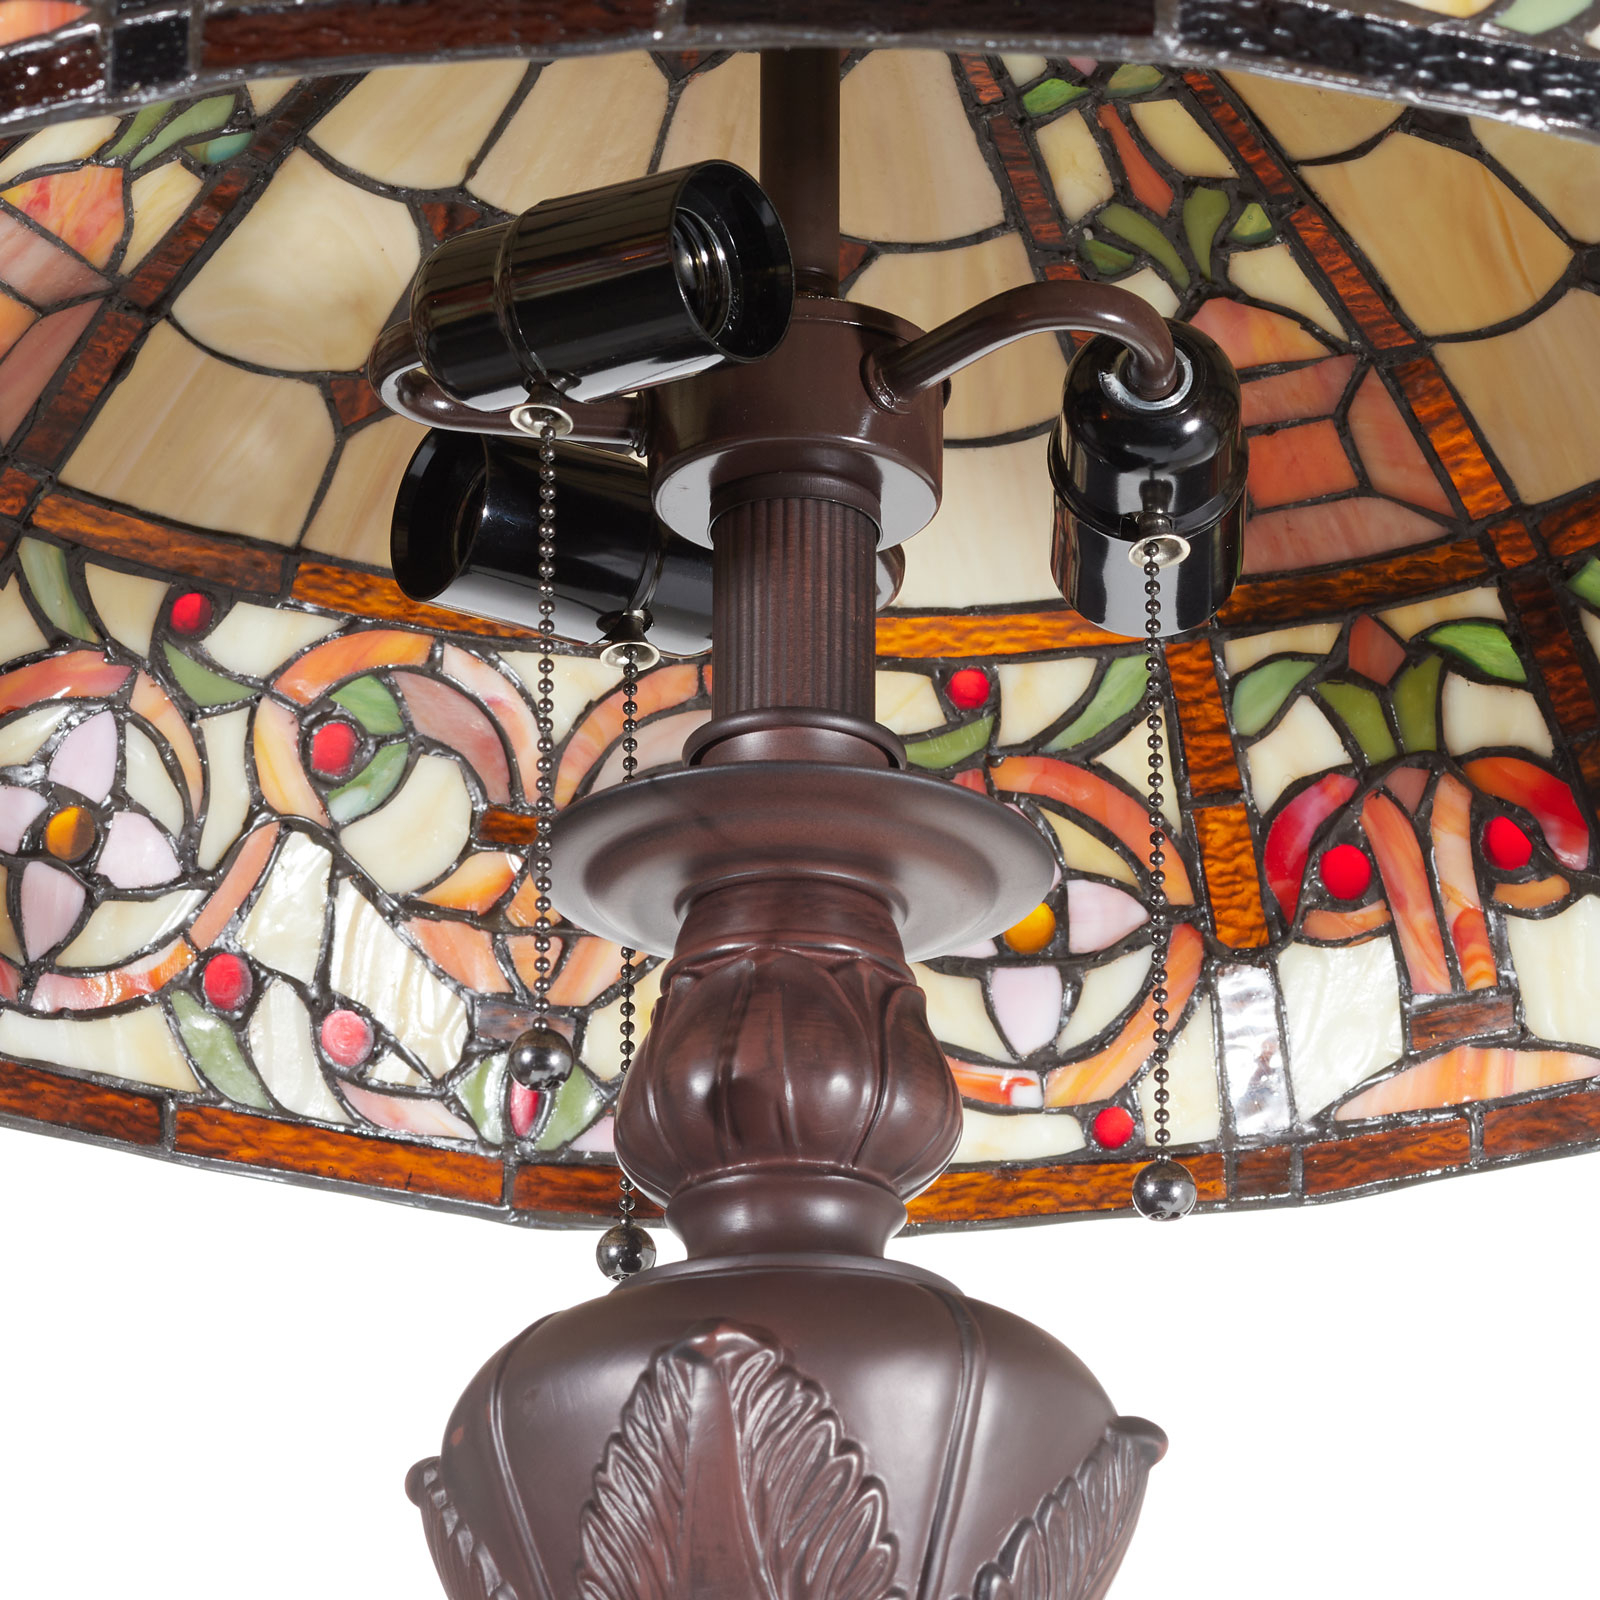 Luxusní stojací lampa Lindsay v Tiffany stylu